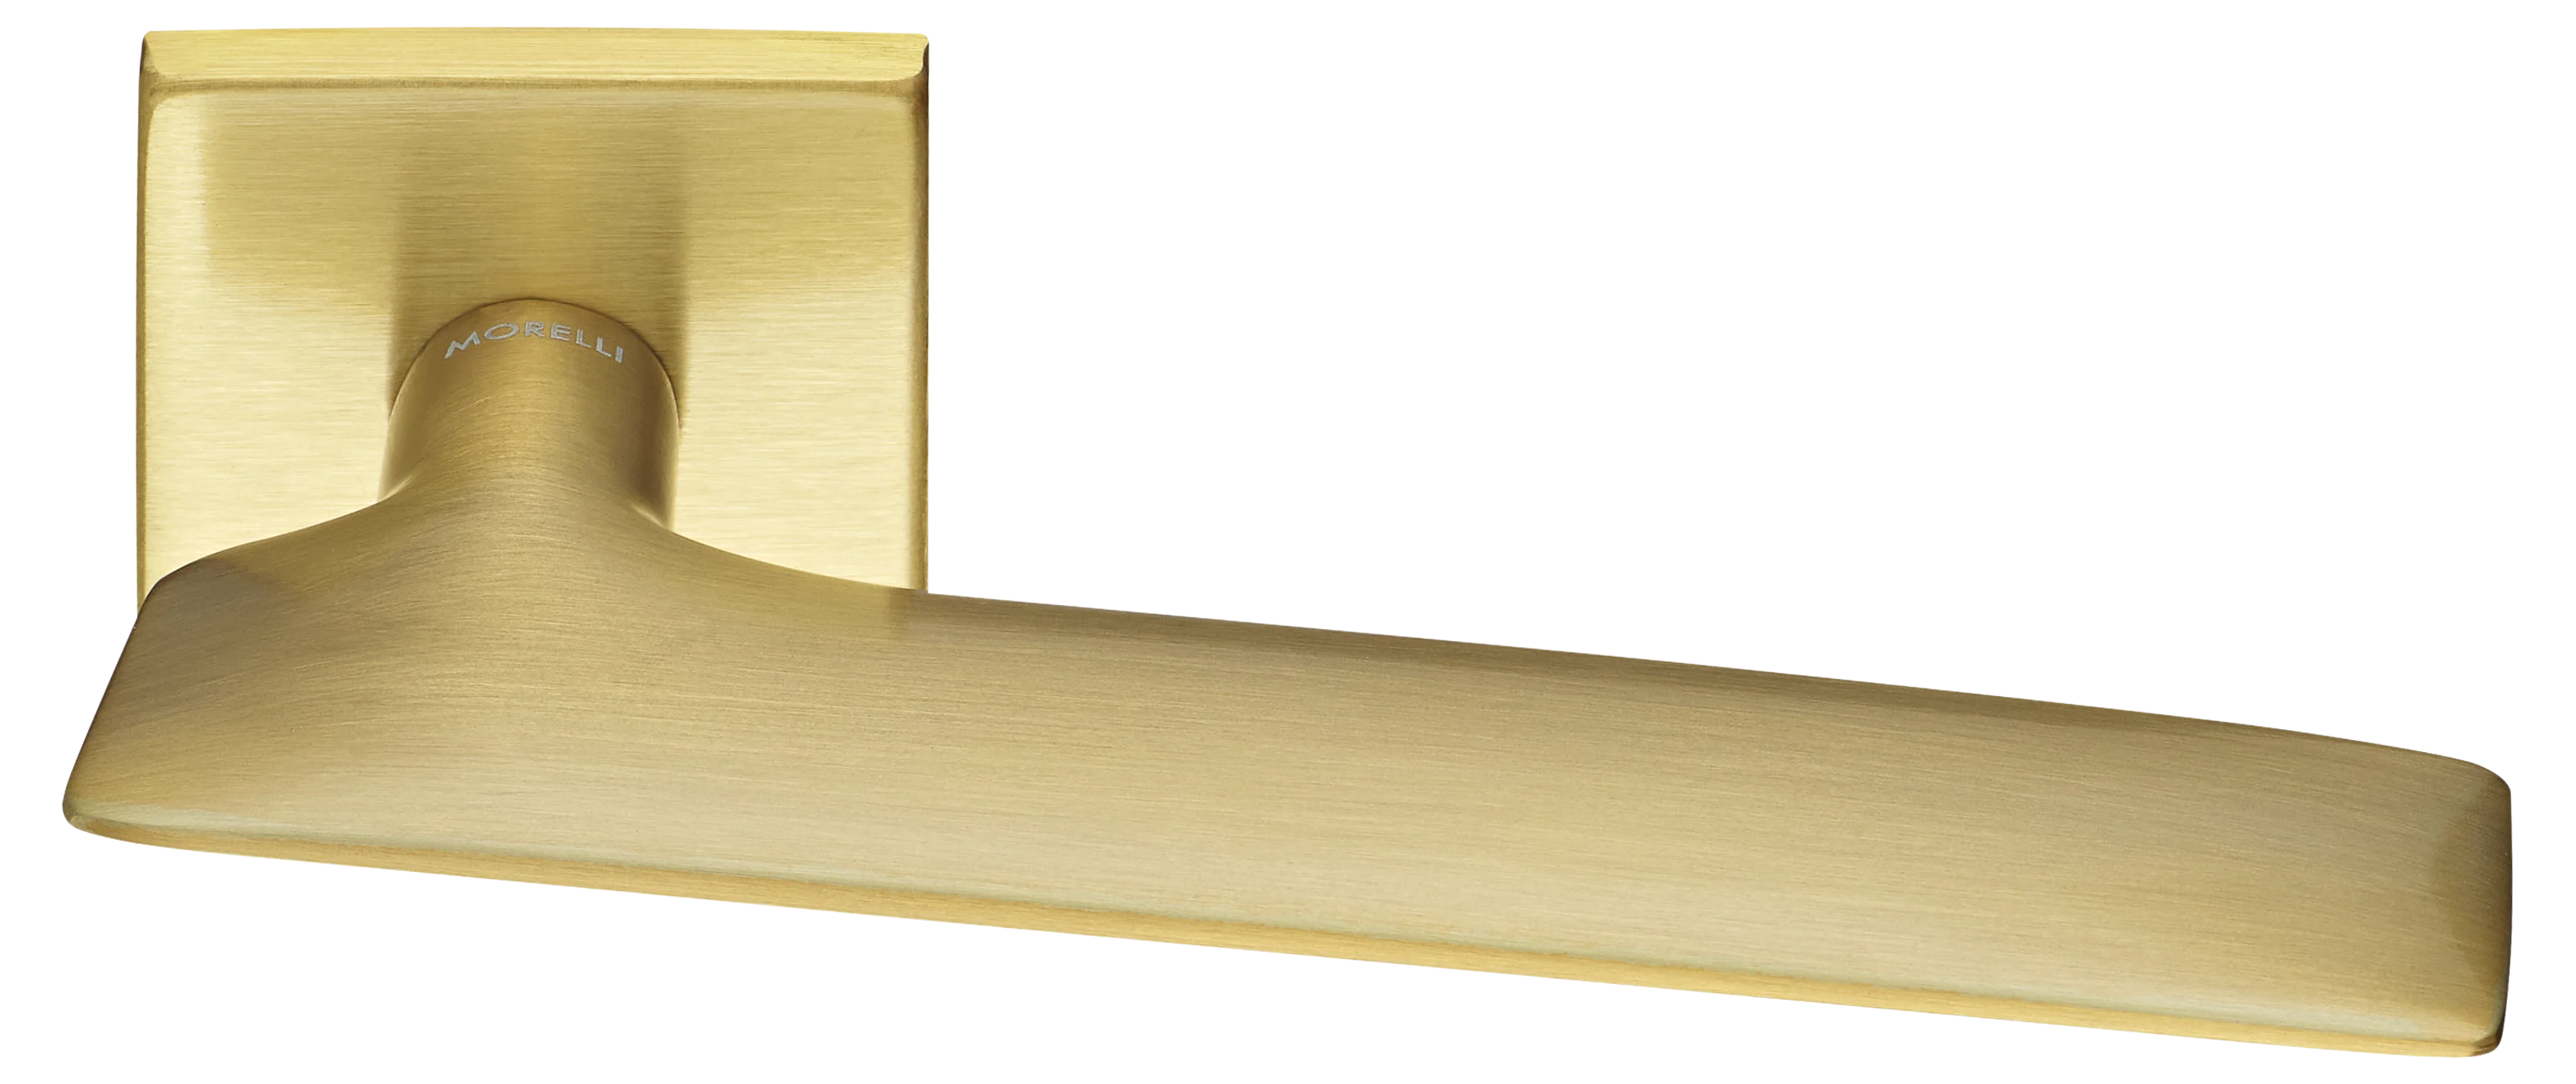 GALACTIC S5 OSA, ручка дверная, цвет -  матовое золото фото купить Набережные Челны